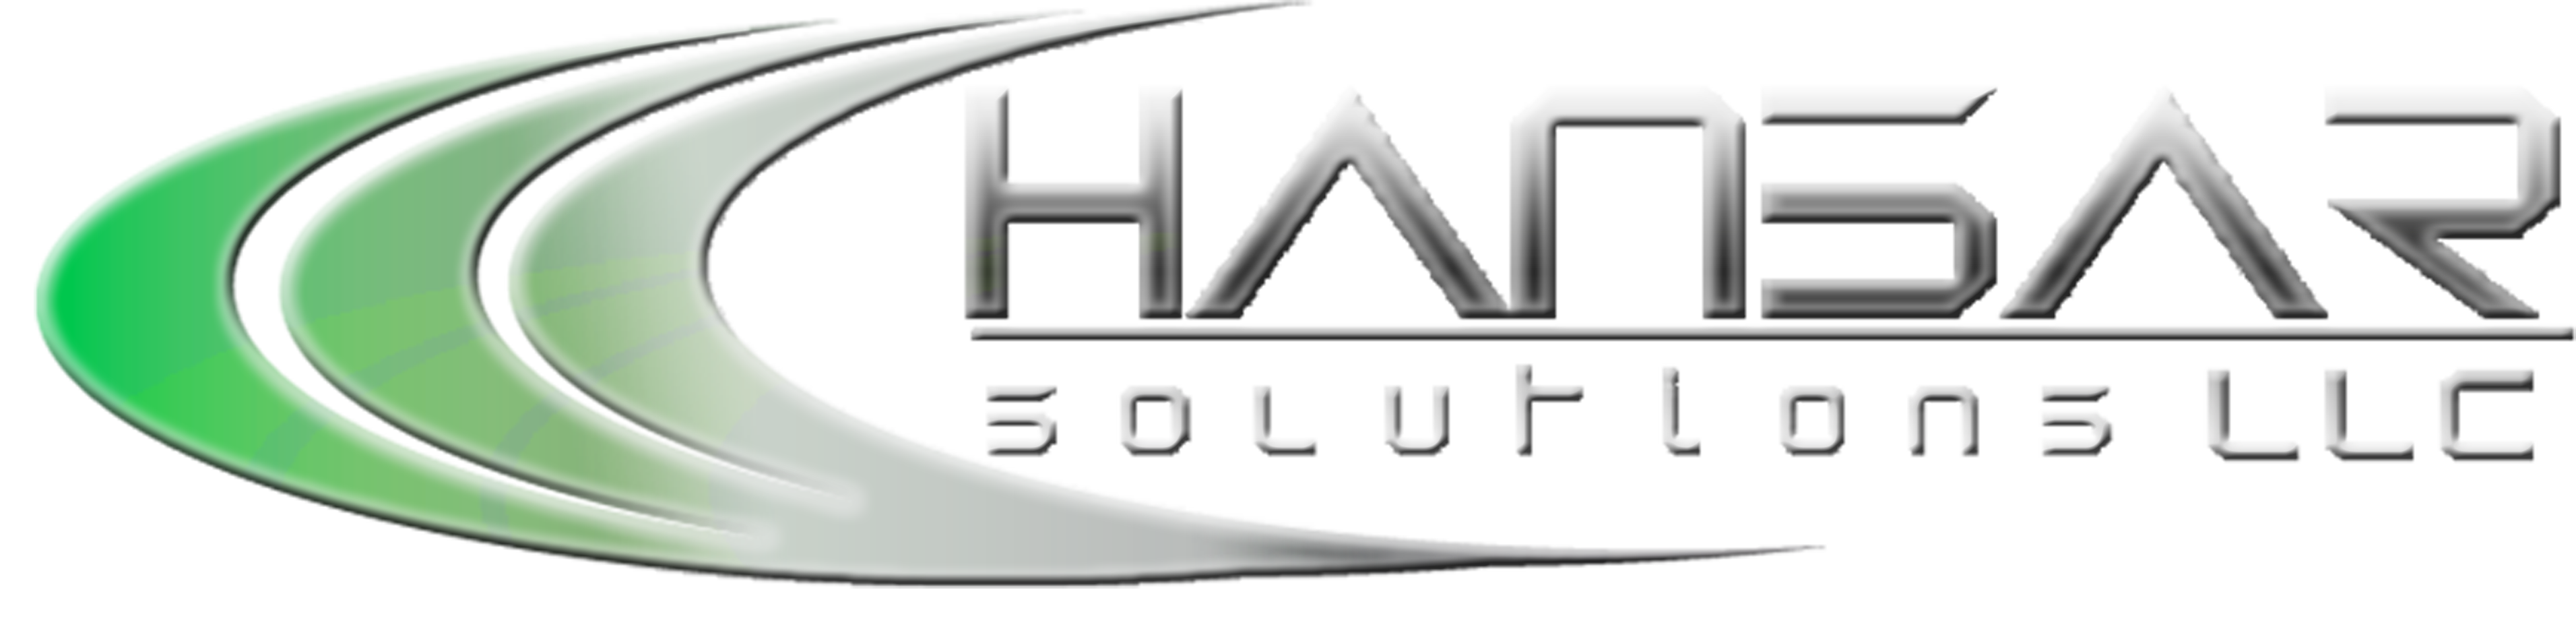 Hansar Solutions - Productos - Servidores - Equipos de Escritorio - Portatiles - Equipos Fiscales y Soluciones Pos - Apple MAC - Software Microsoft - Sistemas de Gestion Empresarial